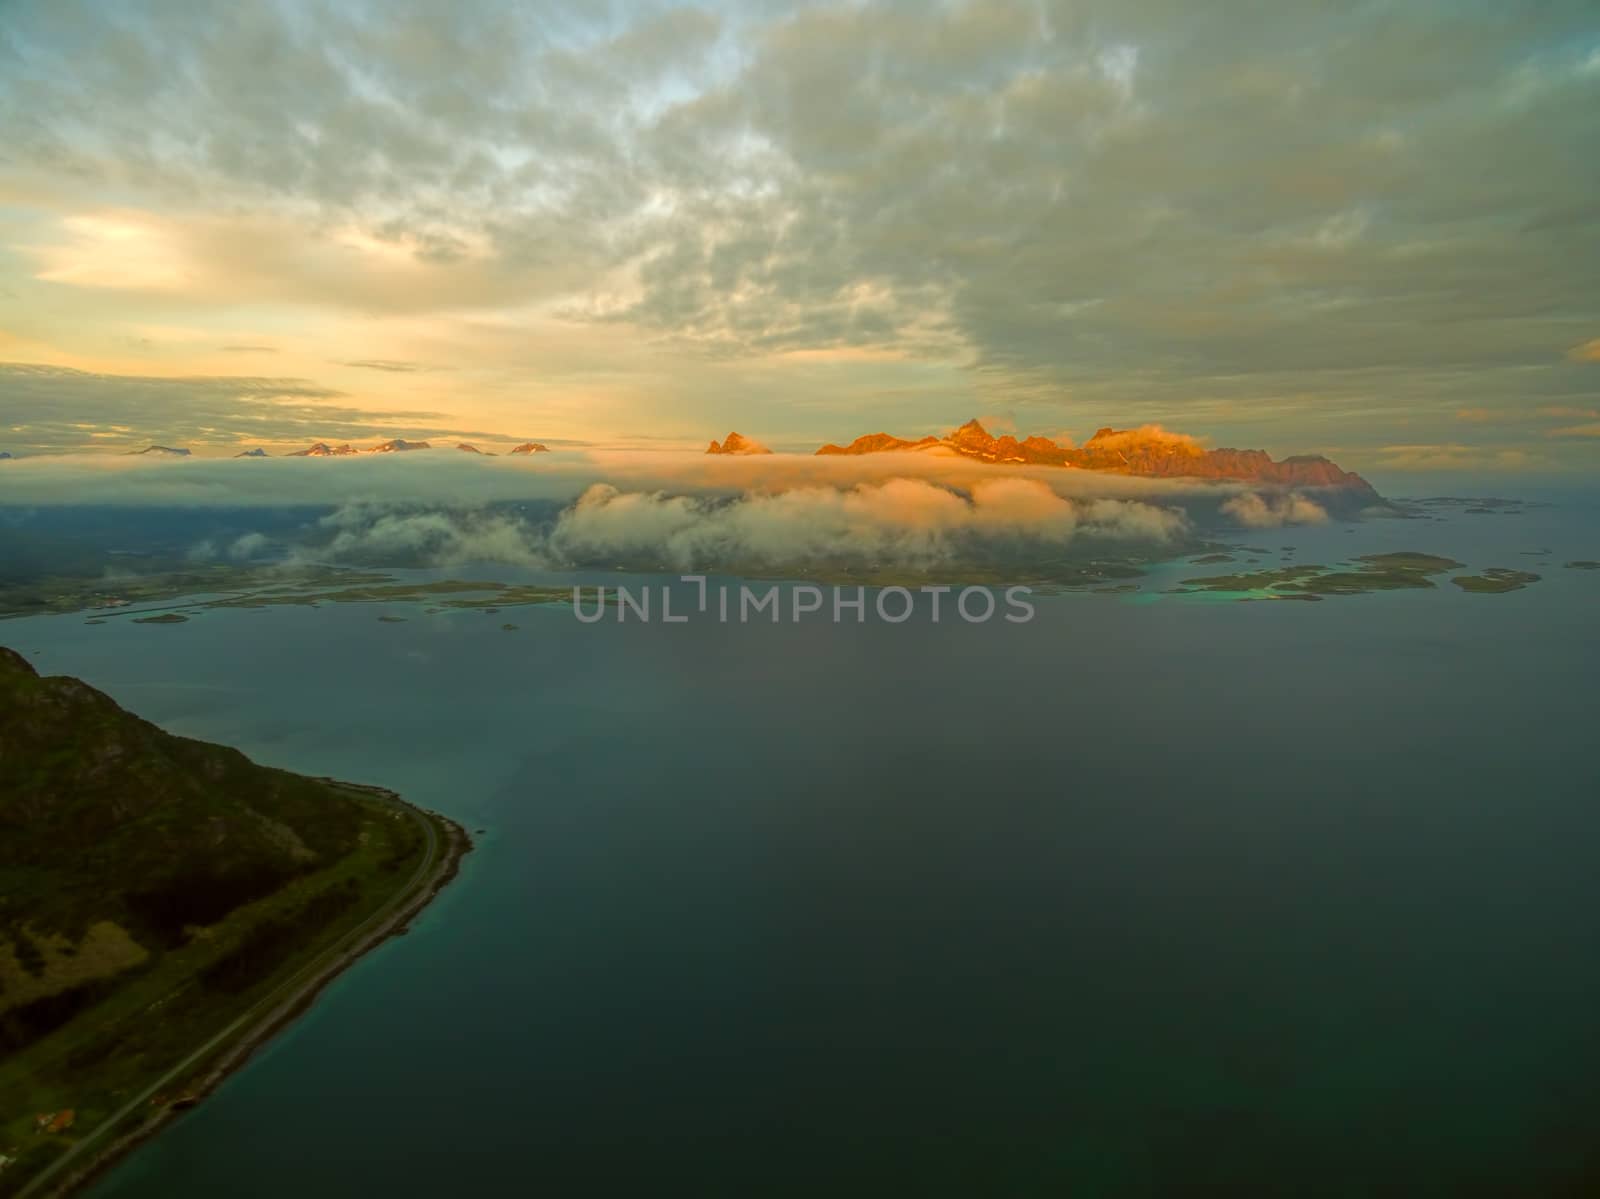 Midnight sun on Lofoten by Harvepino